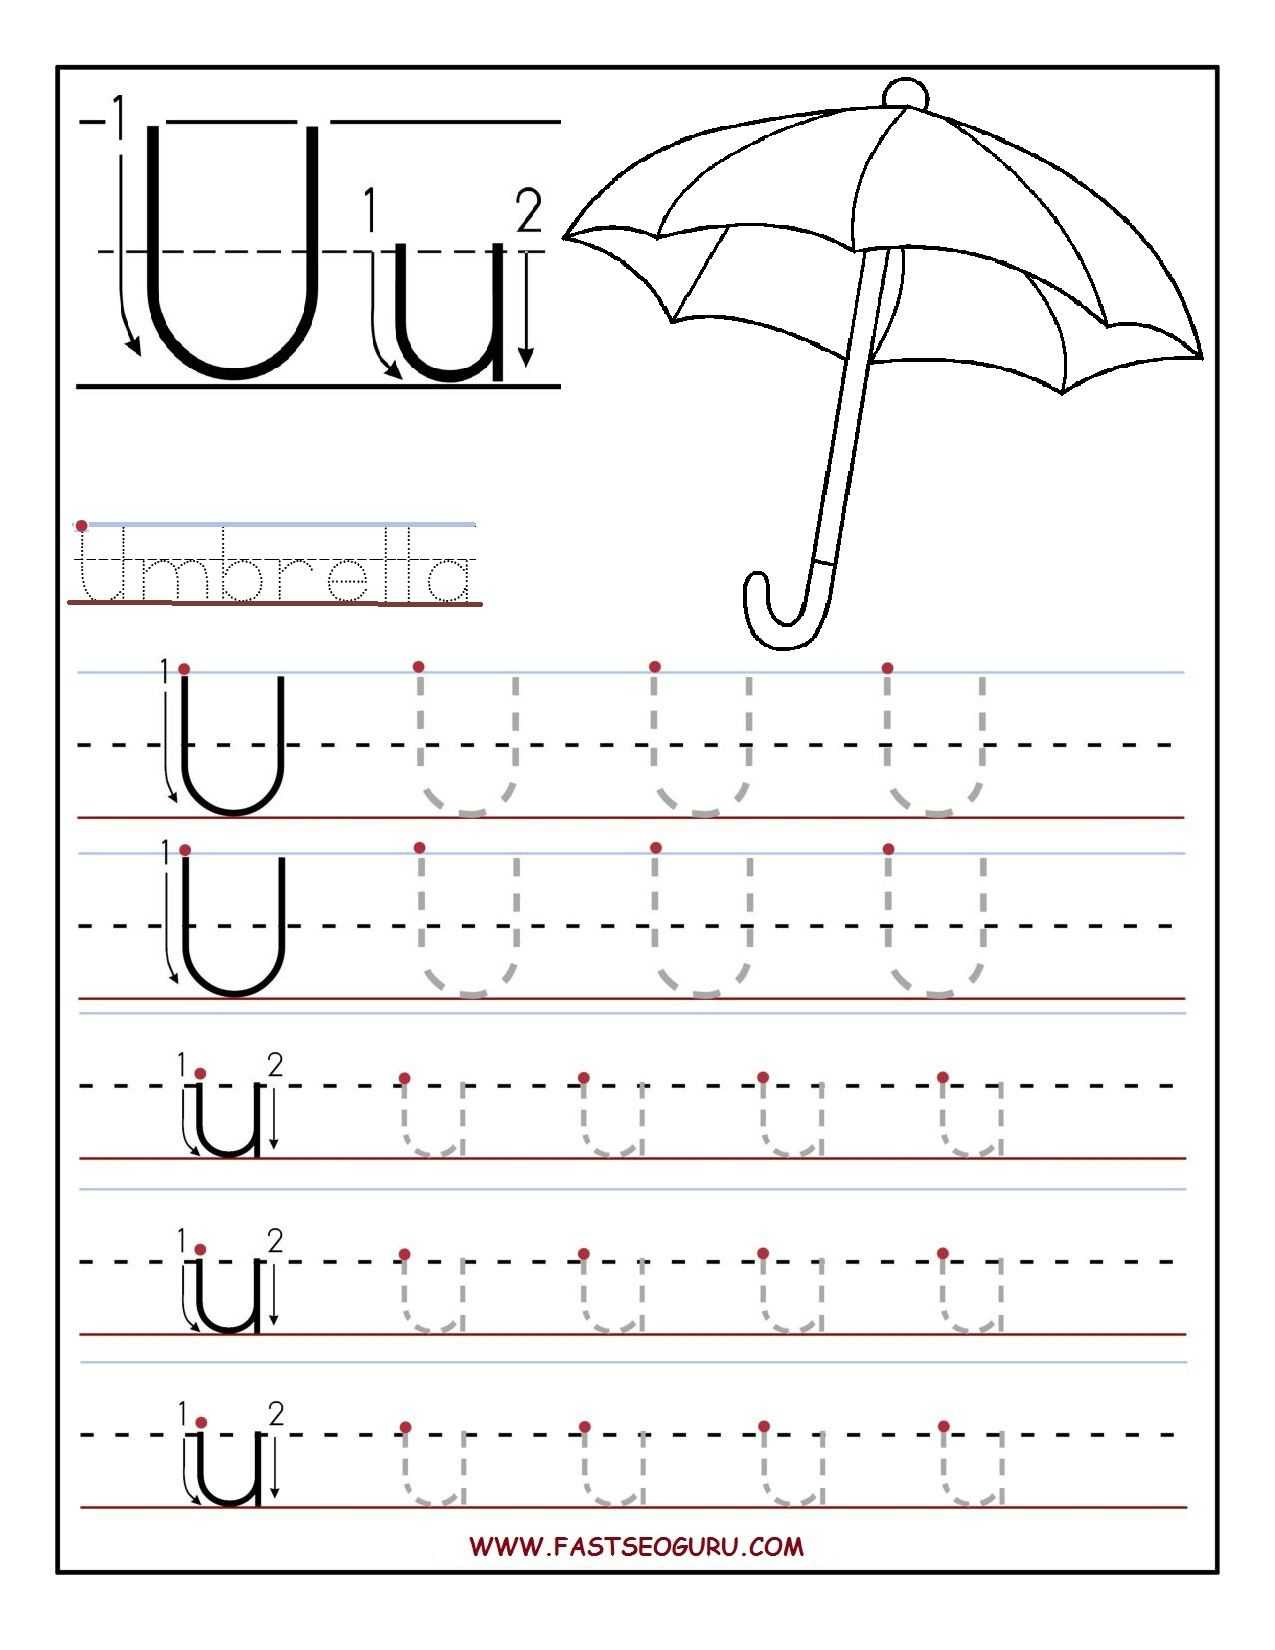 Preschool Writing Worksheets Free Printable or Printable Letter U Tracing Worksheets for Preschool